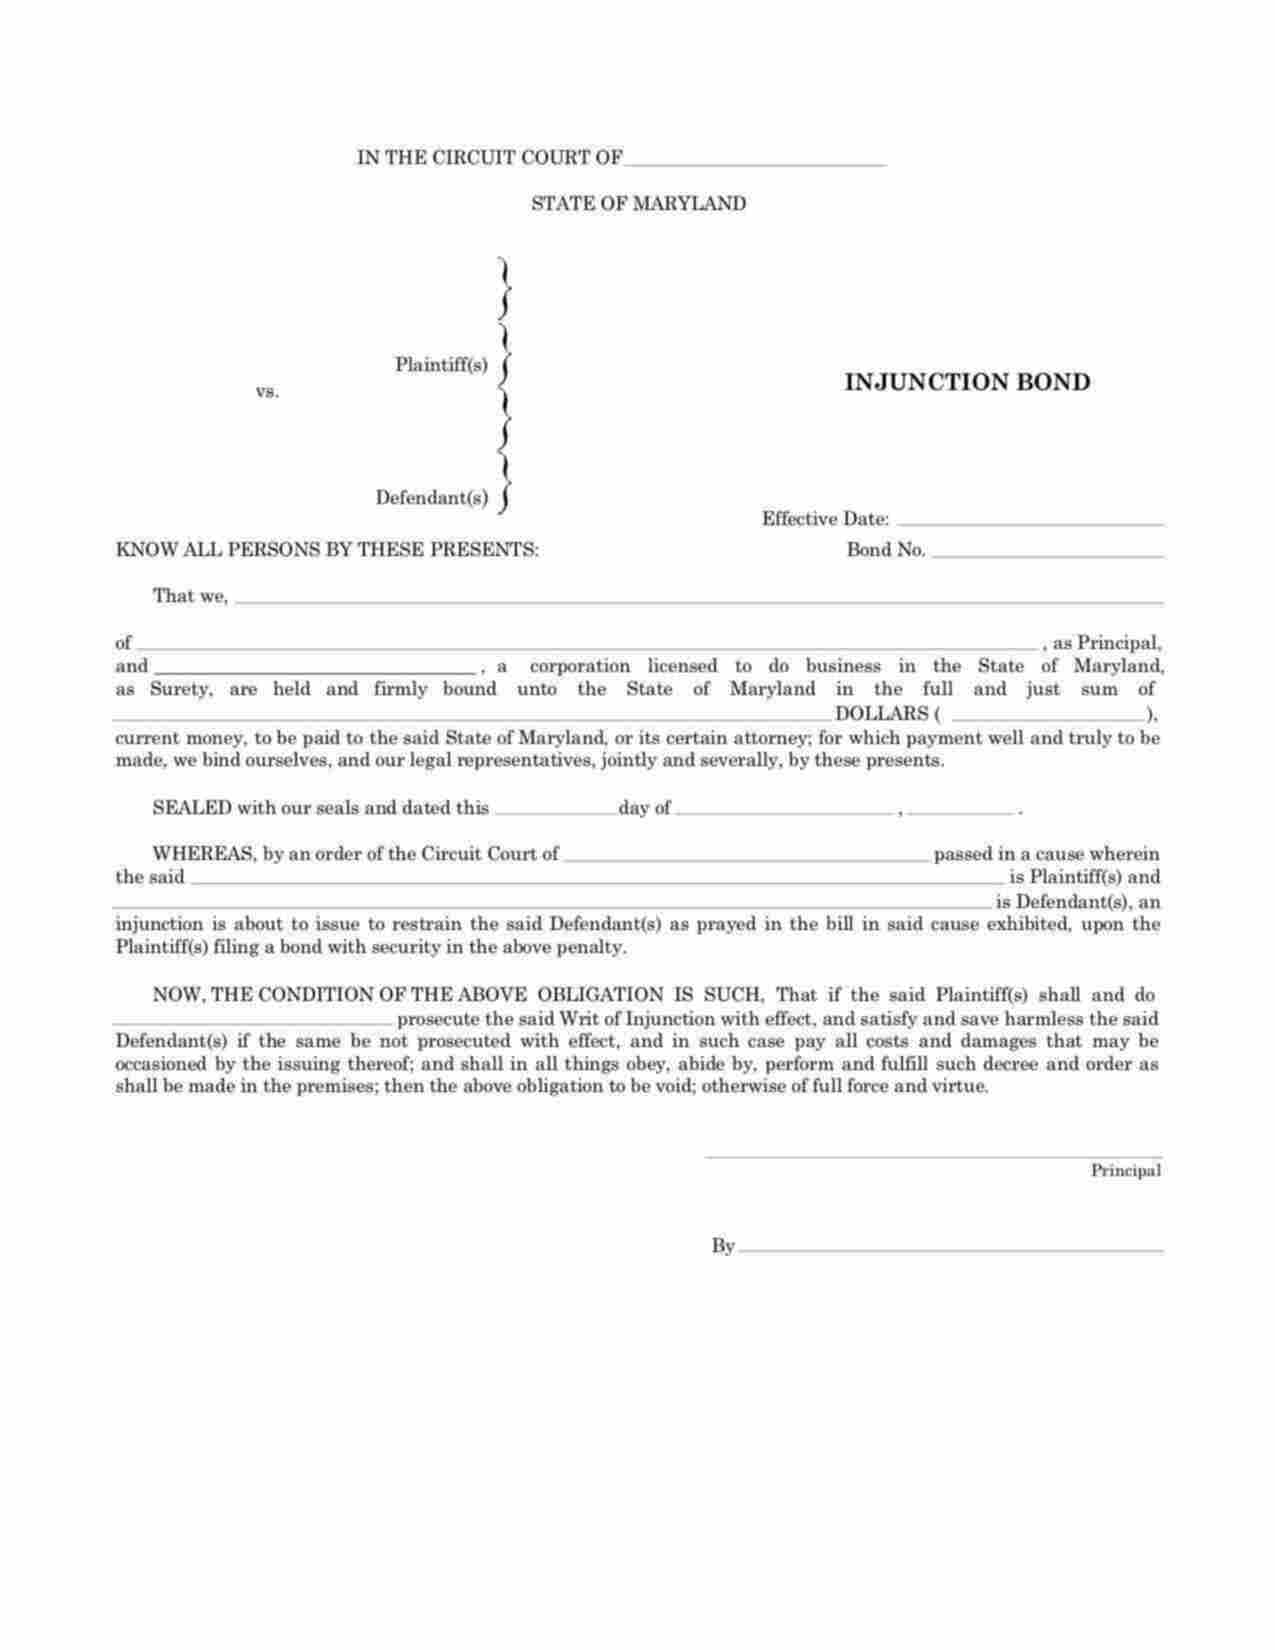 Maryland Injunction Bond Form